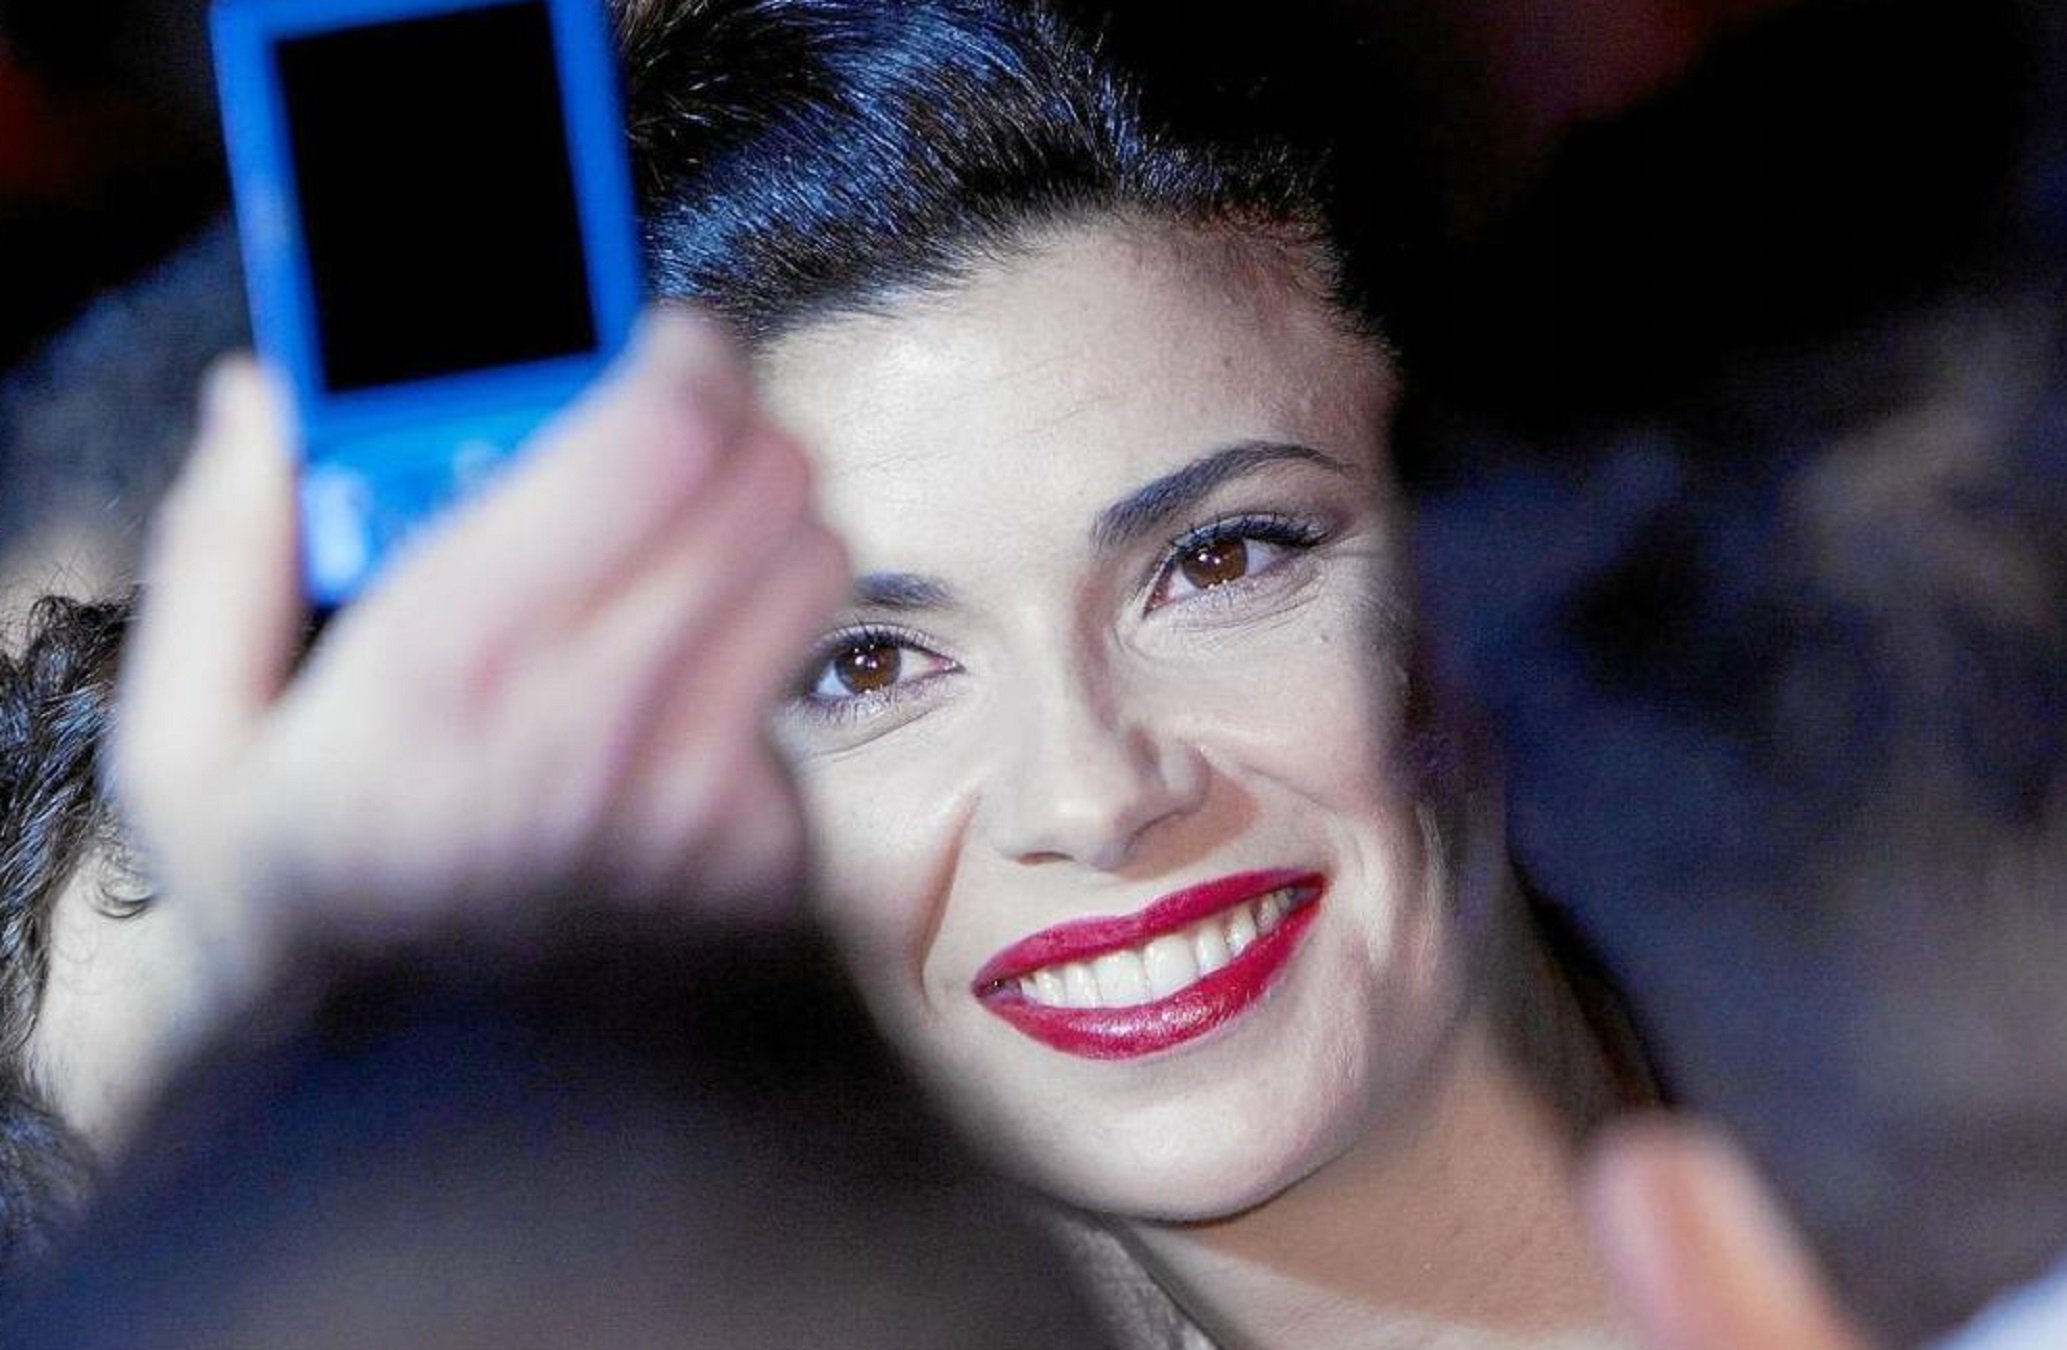 Canvi de vida radical d'una famosa actriu espanyola: ara és experta en sexe